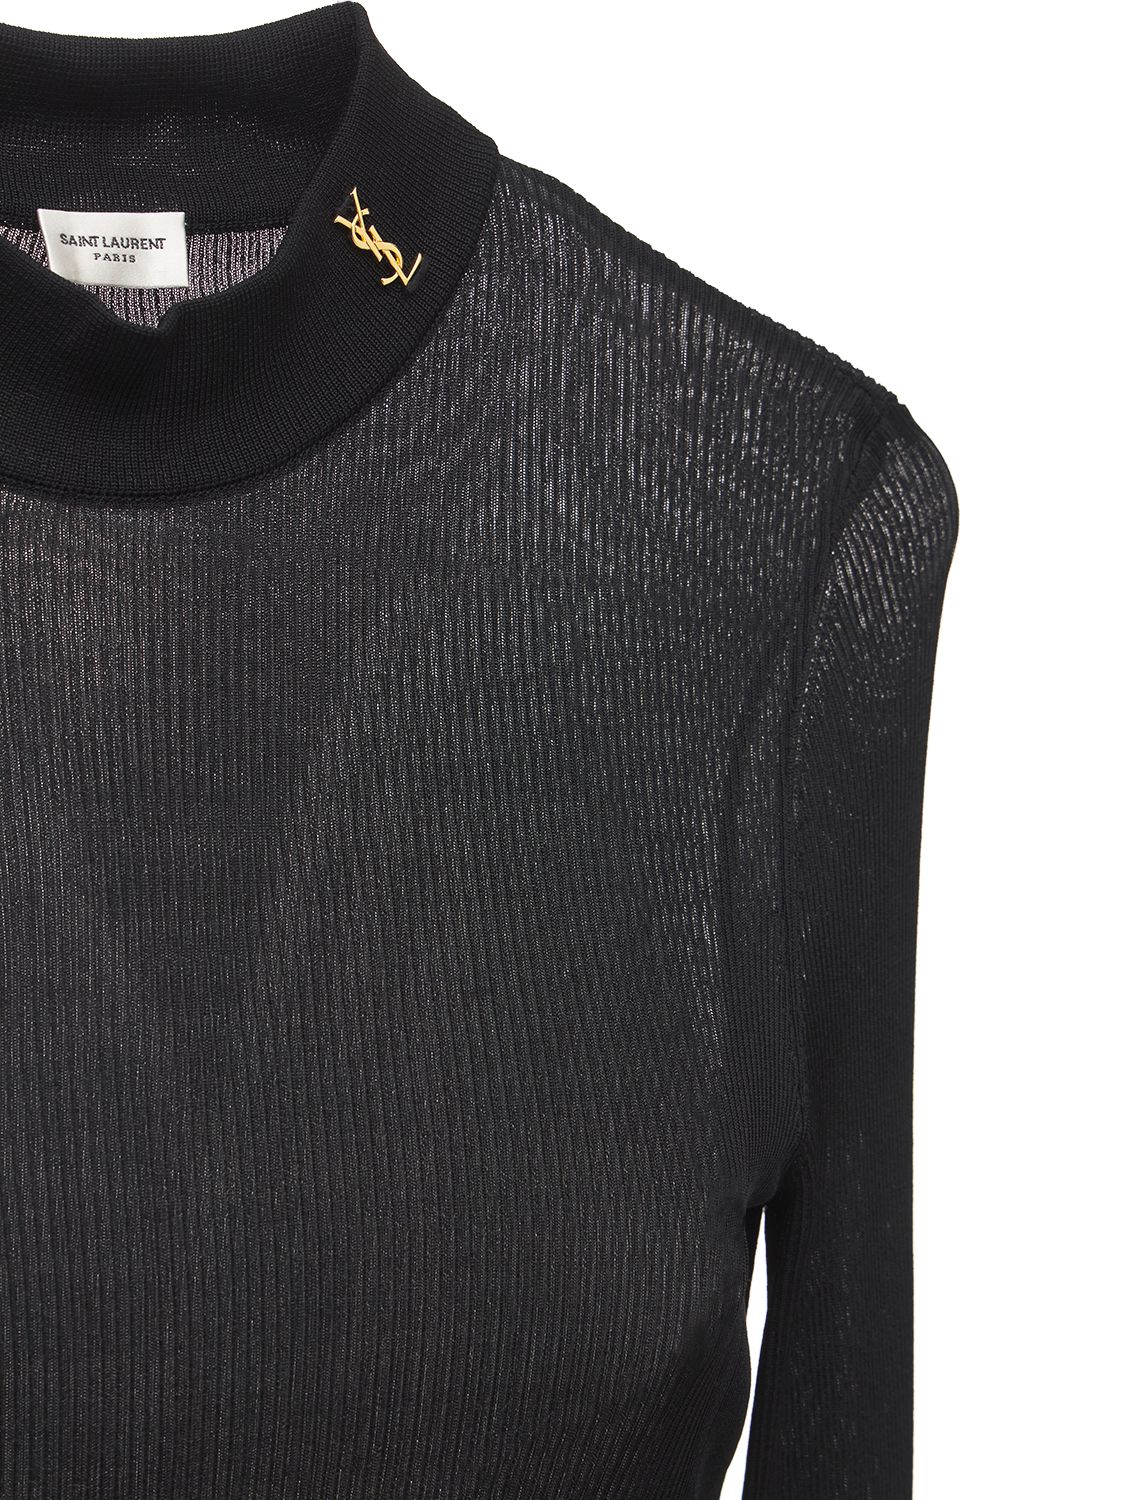 Shop Saint Laurent Silk Knit Top In Noir